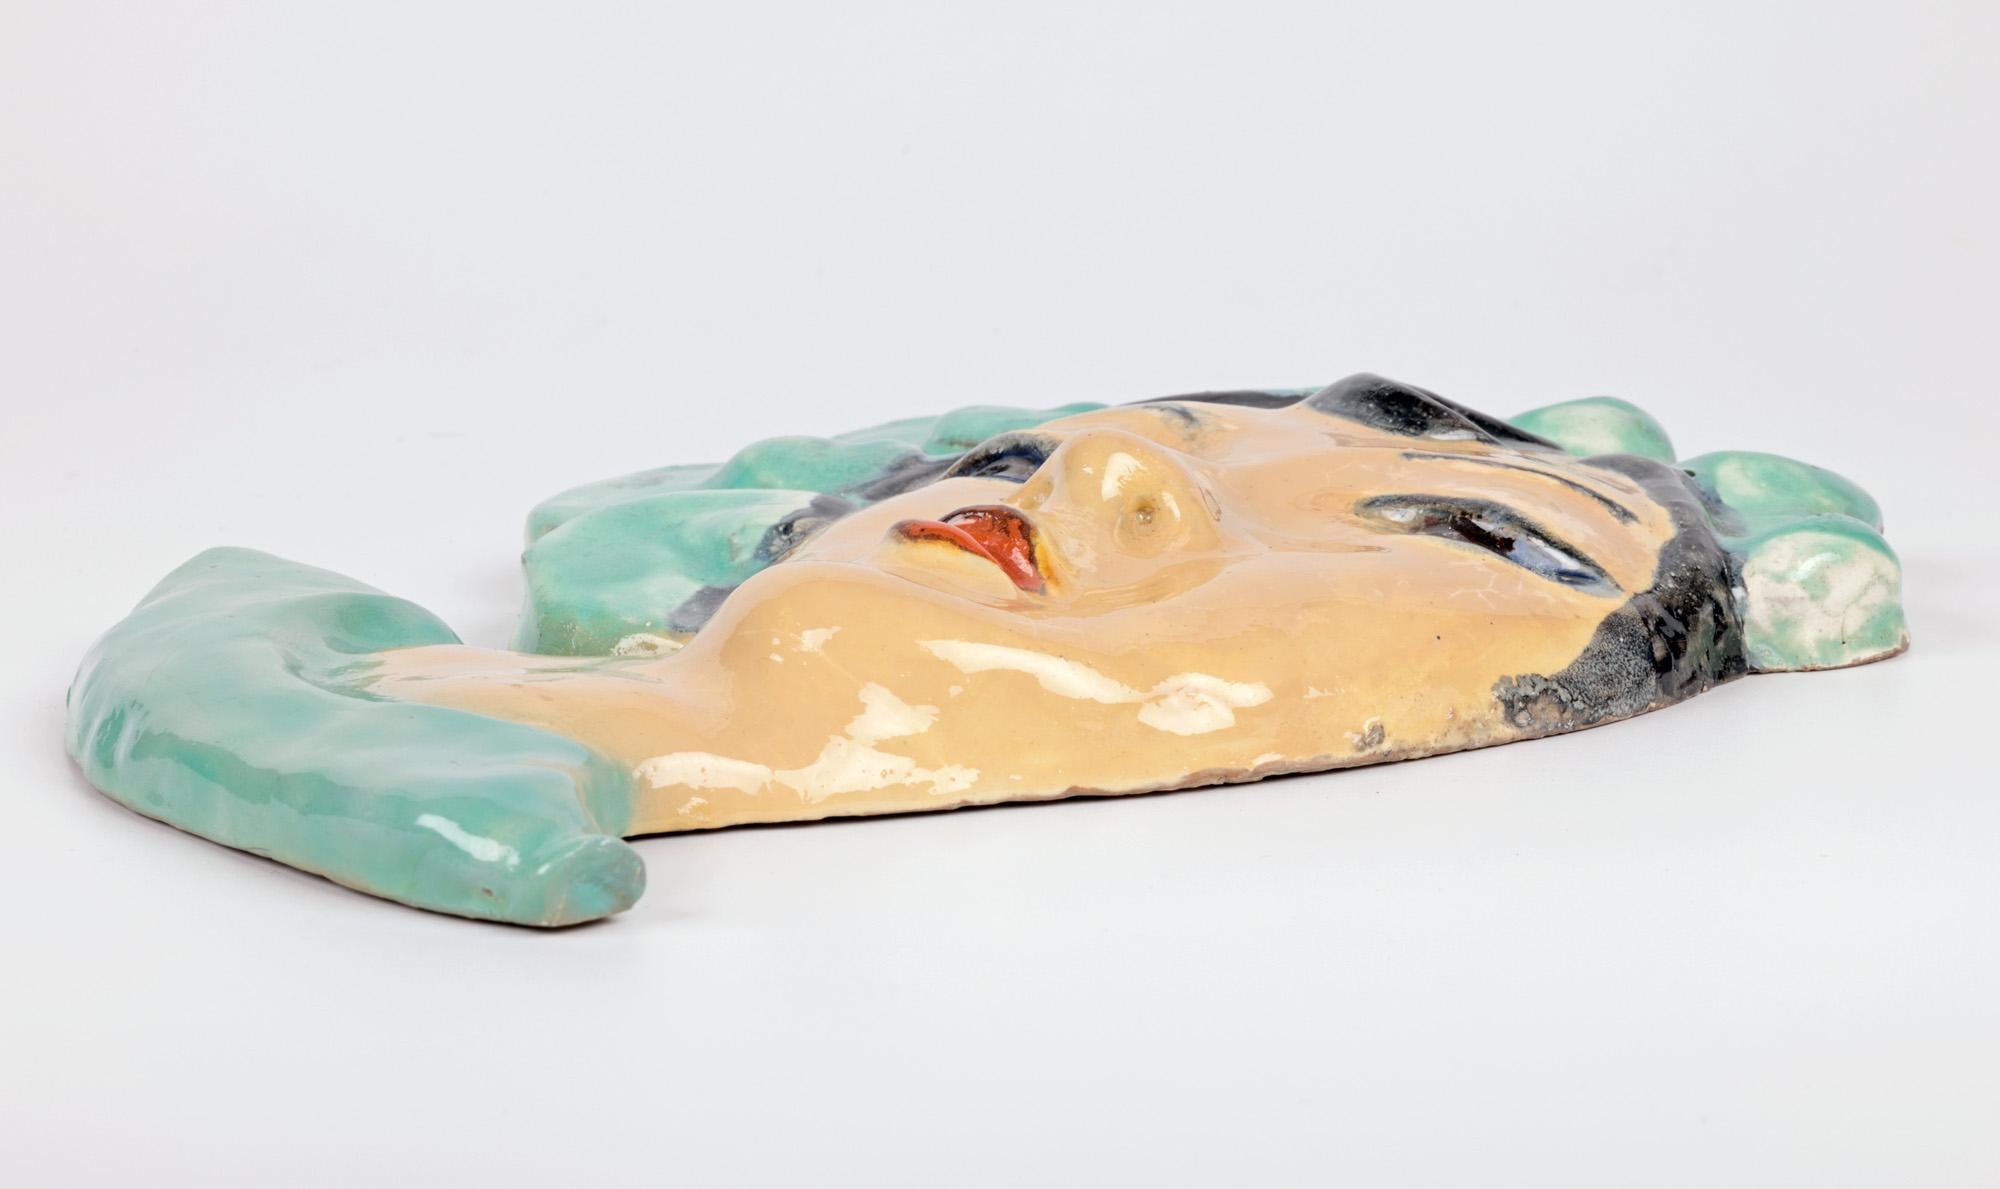 Eine stilvolle und ungewöhnliche österreichische/tschechische Art-Deco-Keramik-Gesichtsmaske einer Dame, die Walter Bosse in der Art der Wiener Werkstätte zugeschrieben wird, aus der Zeit um 1930. Die aus rotem Terrakotta-Ton gefertigte Maske stellt